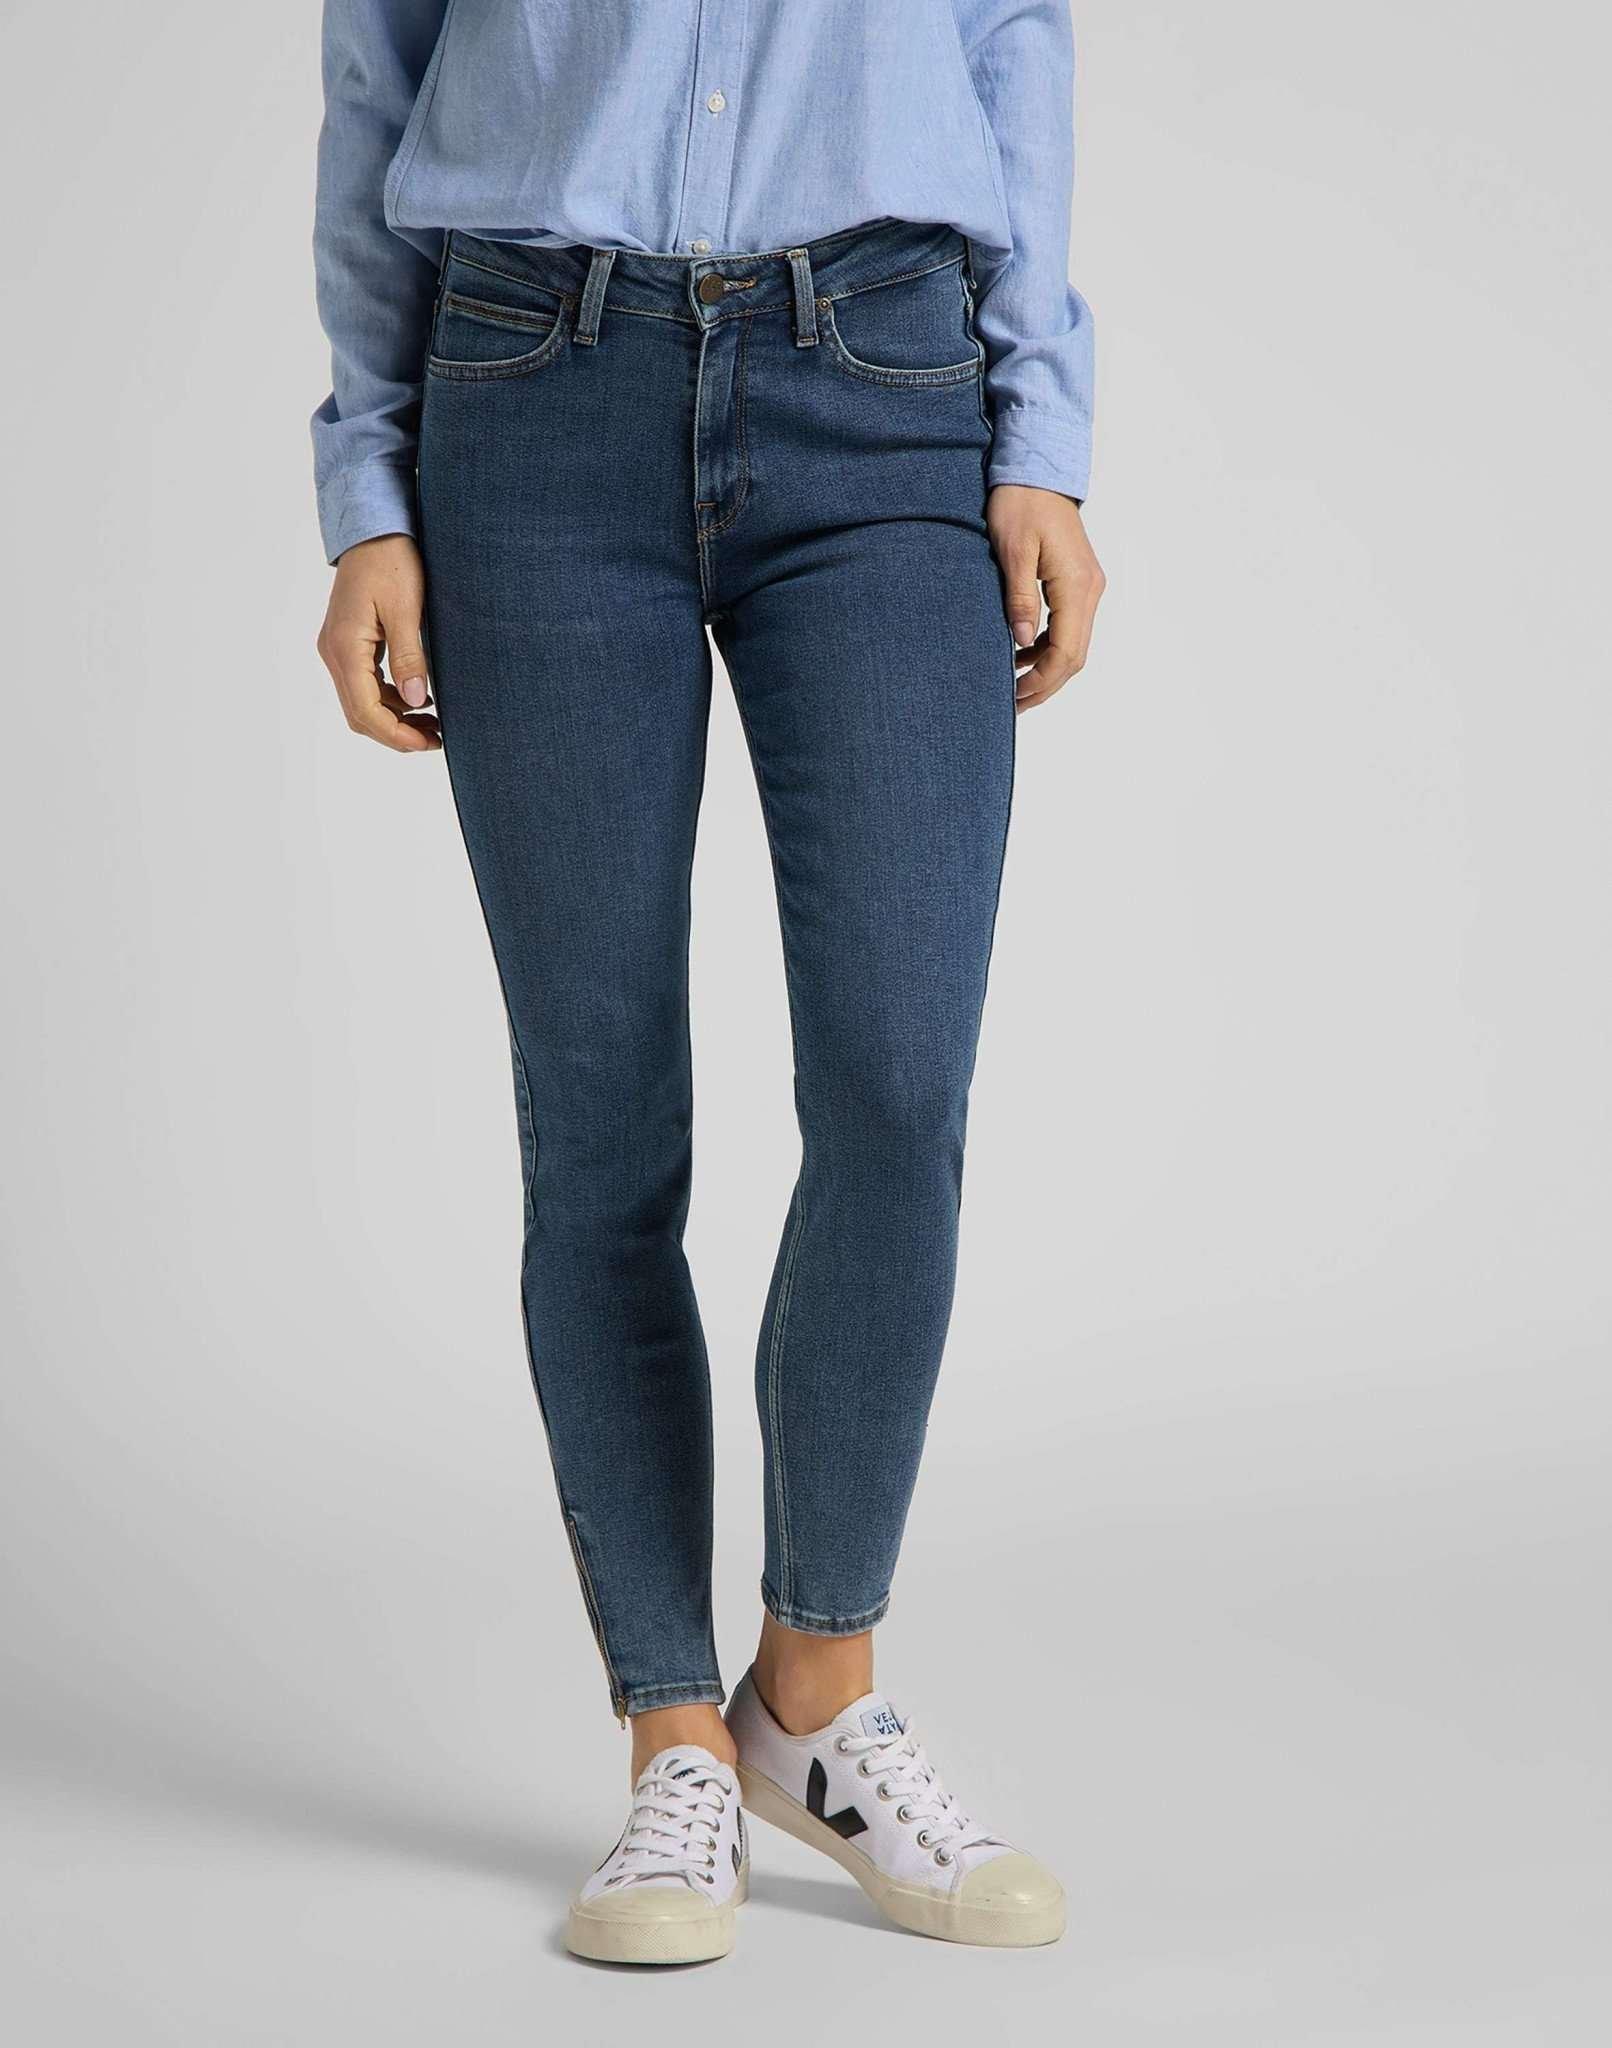 Jeans Skinny Fit Scarlett High Zip Damen Blau Denim W27 von Lee